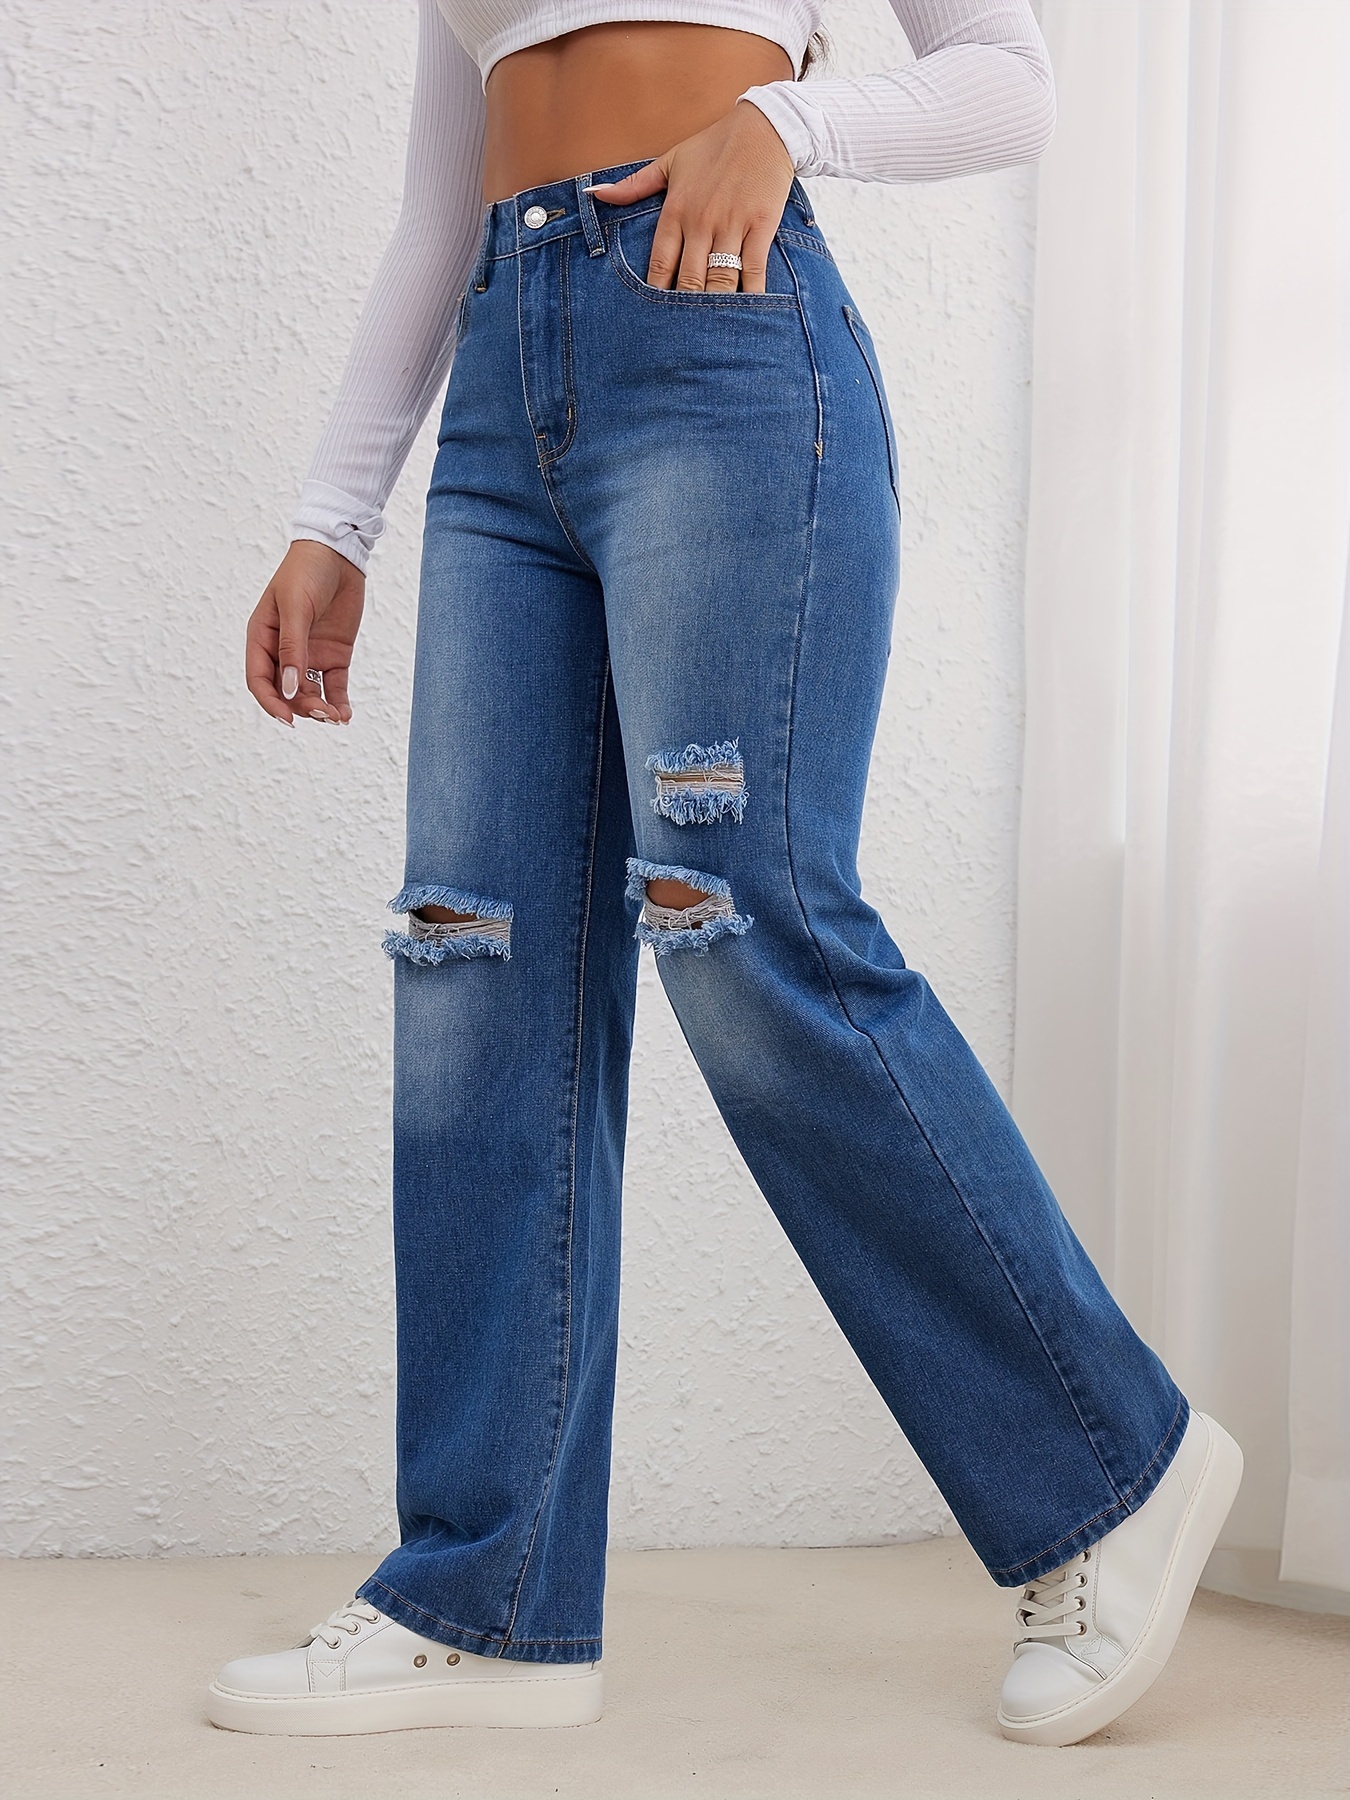 Jeans Rectos Desgastados * Claro, Pantalones De Mezclilla De Cintura Alta  De Ajuste Holgado Con Agujeros Rasgados, Jeans Y Ropa De Mujer